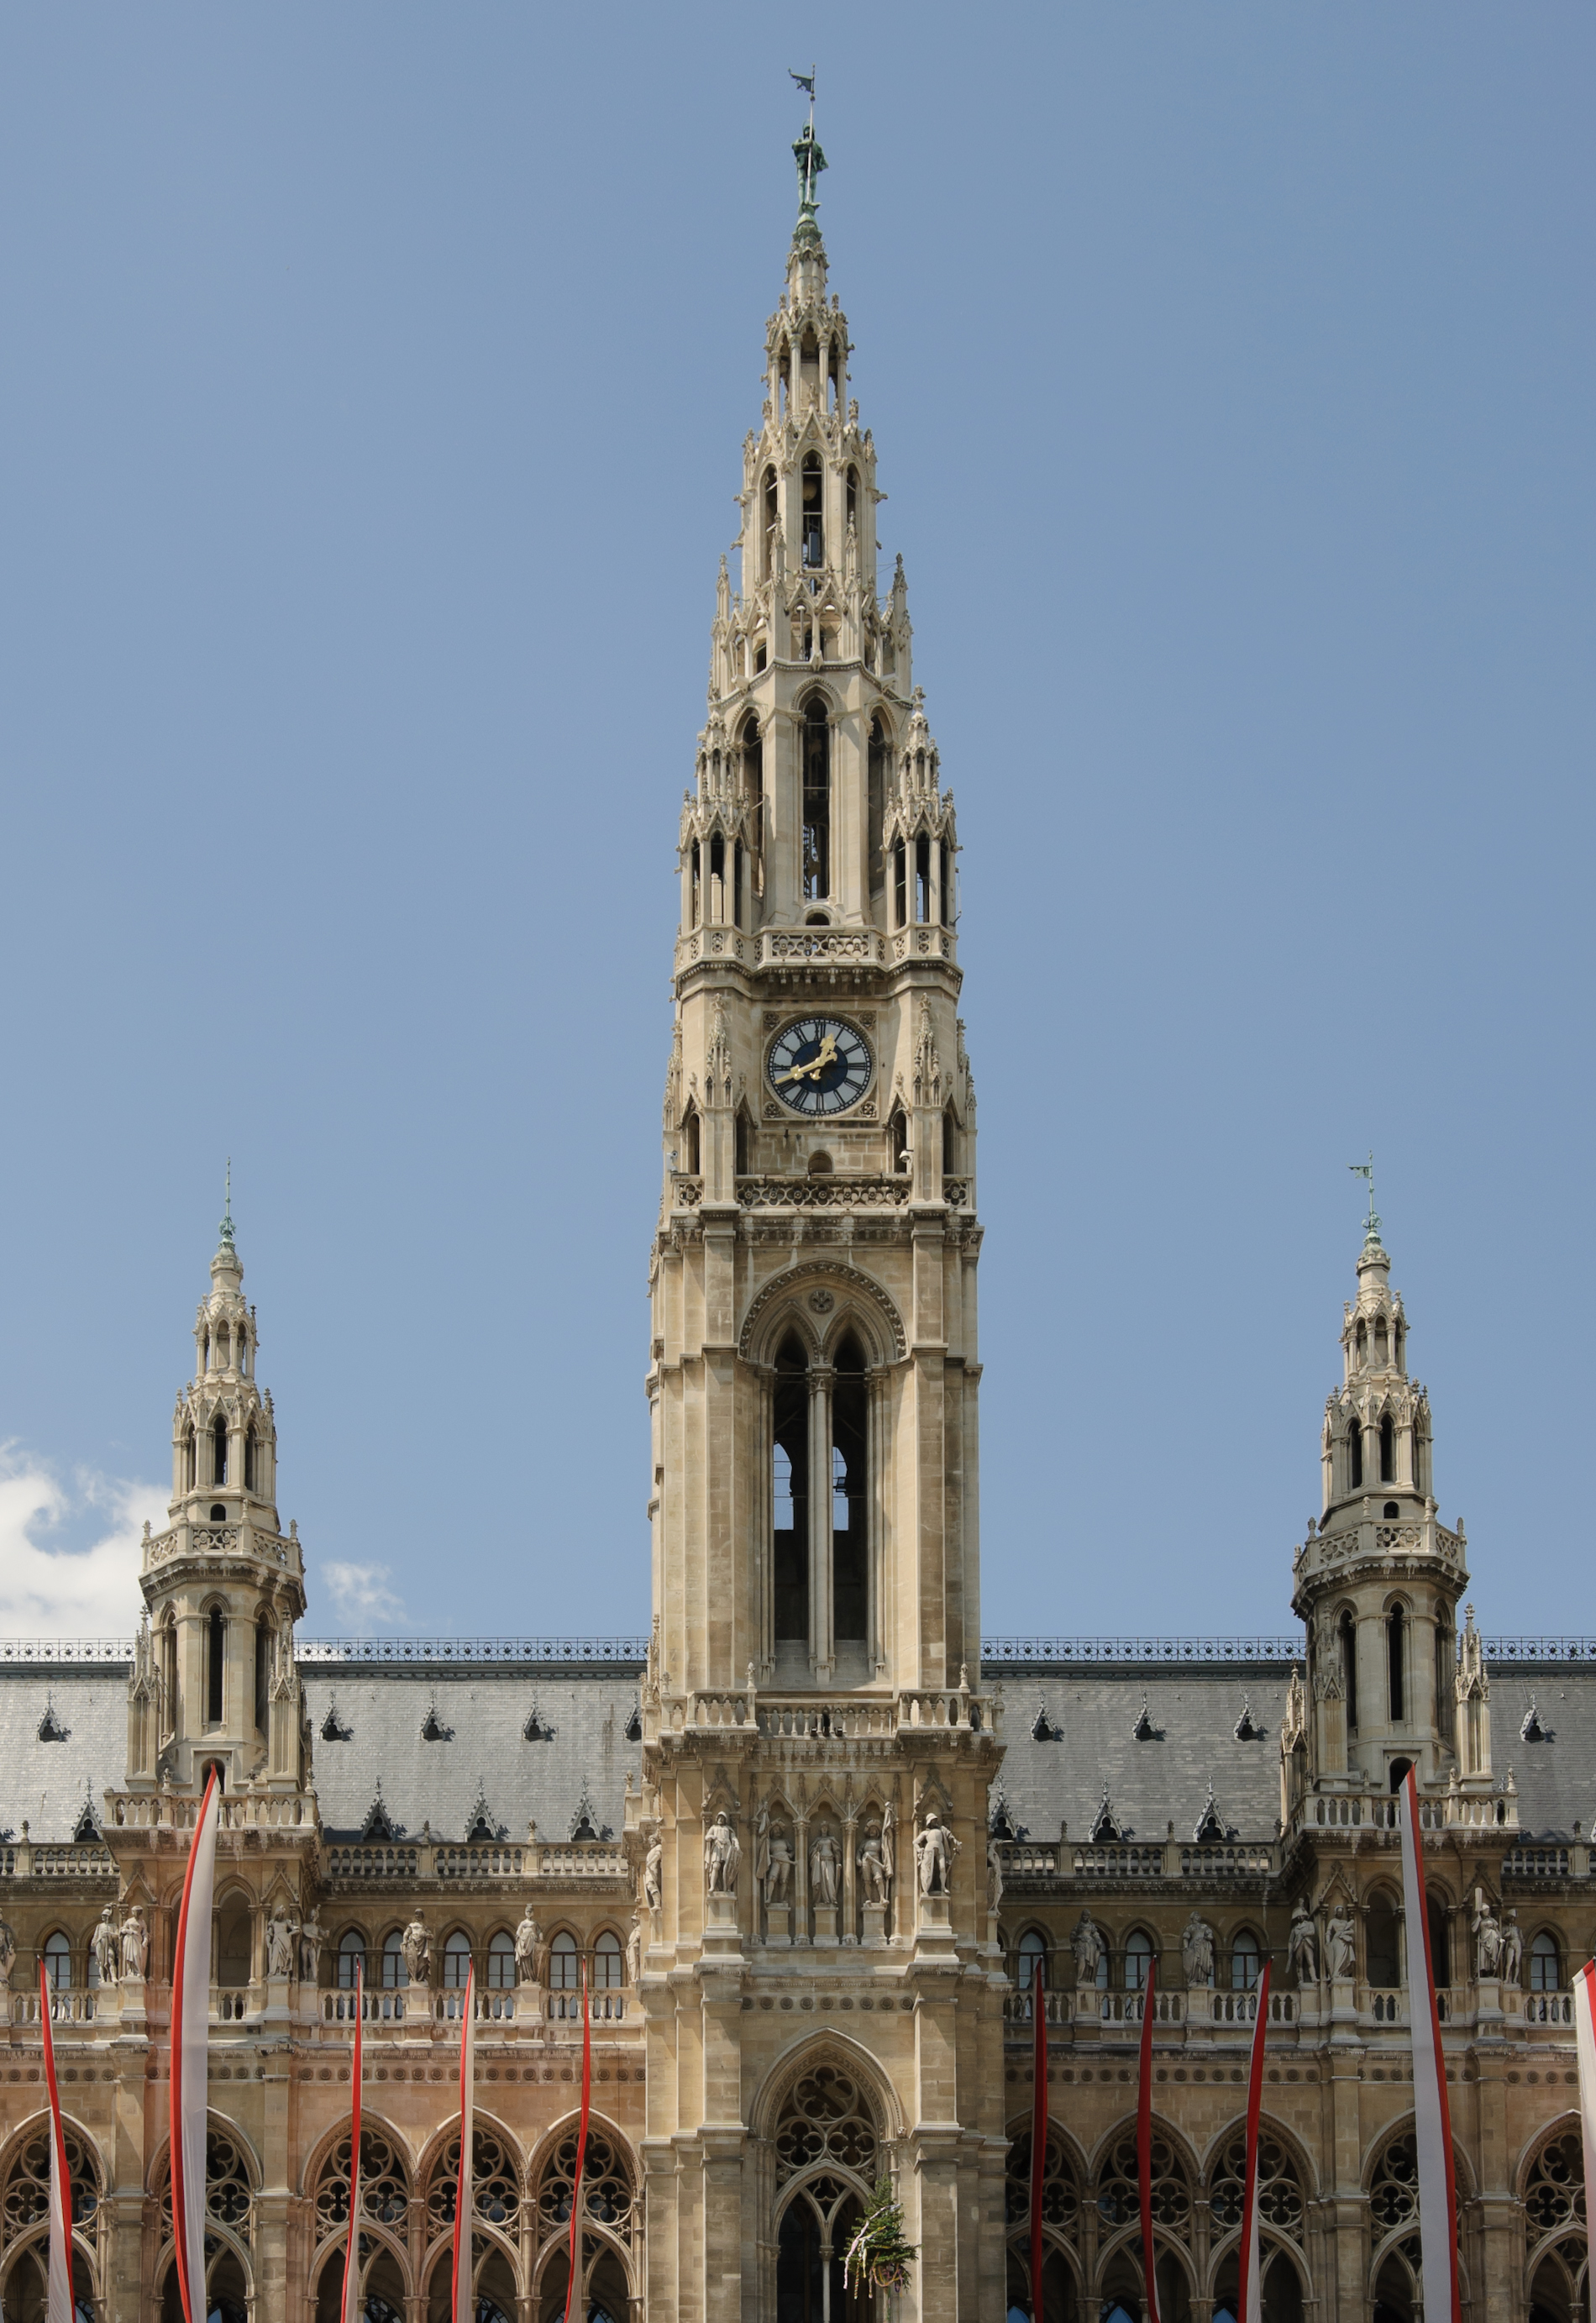 Vienna City Hall tower